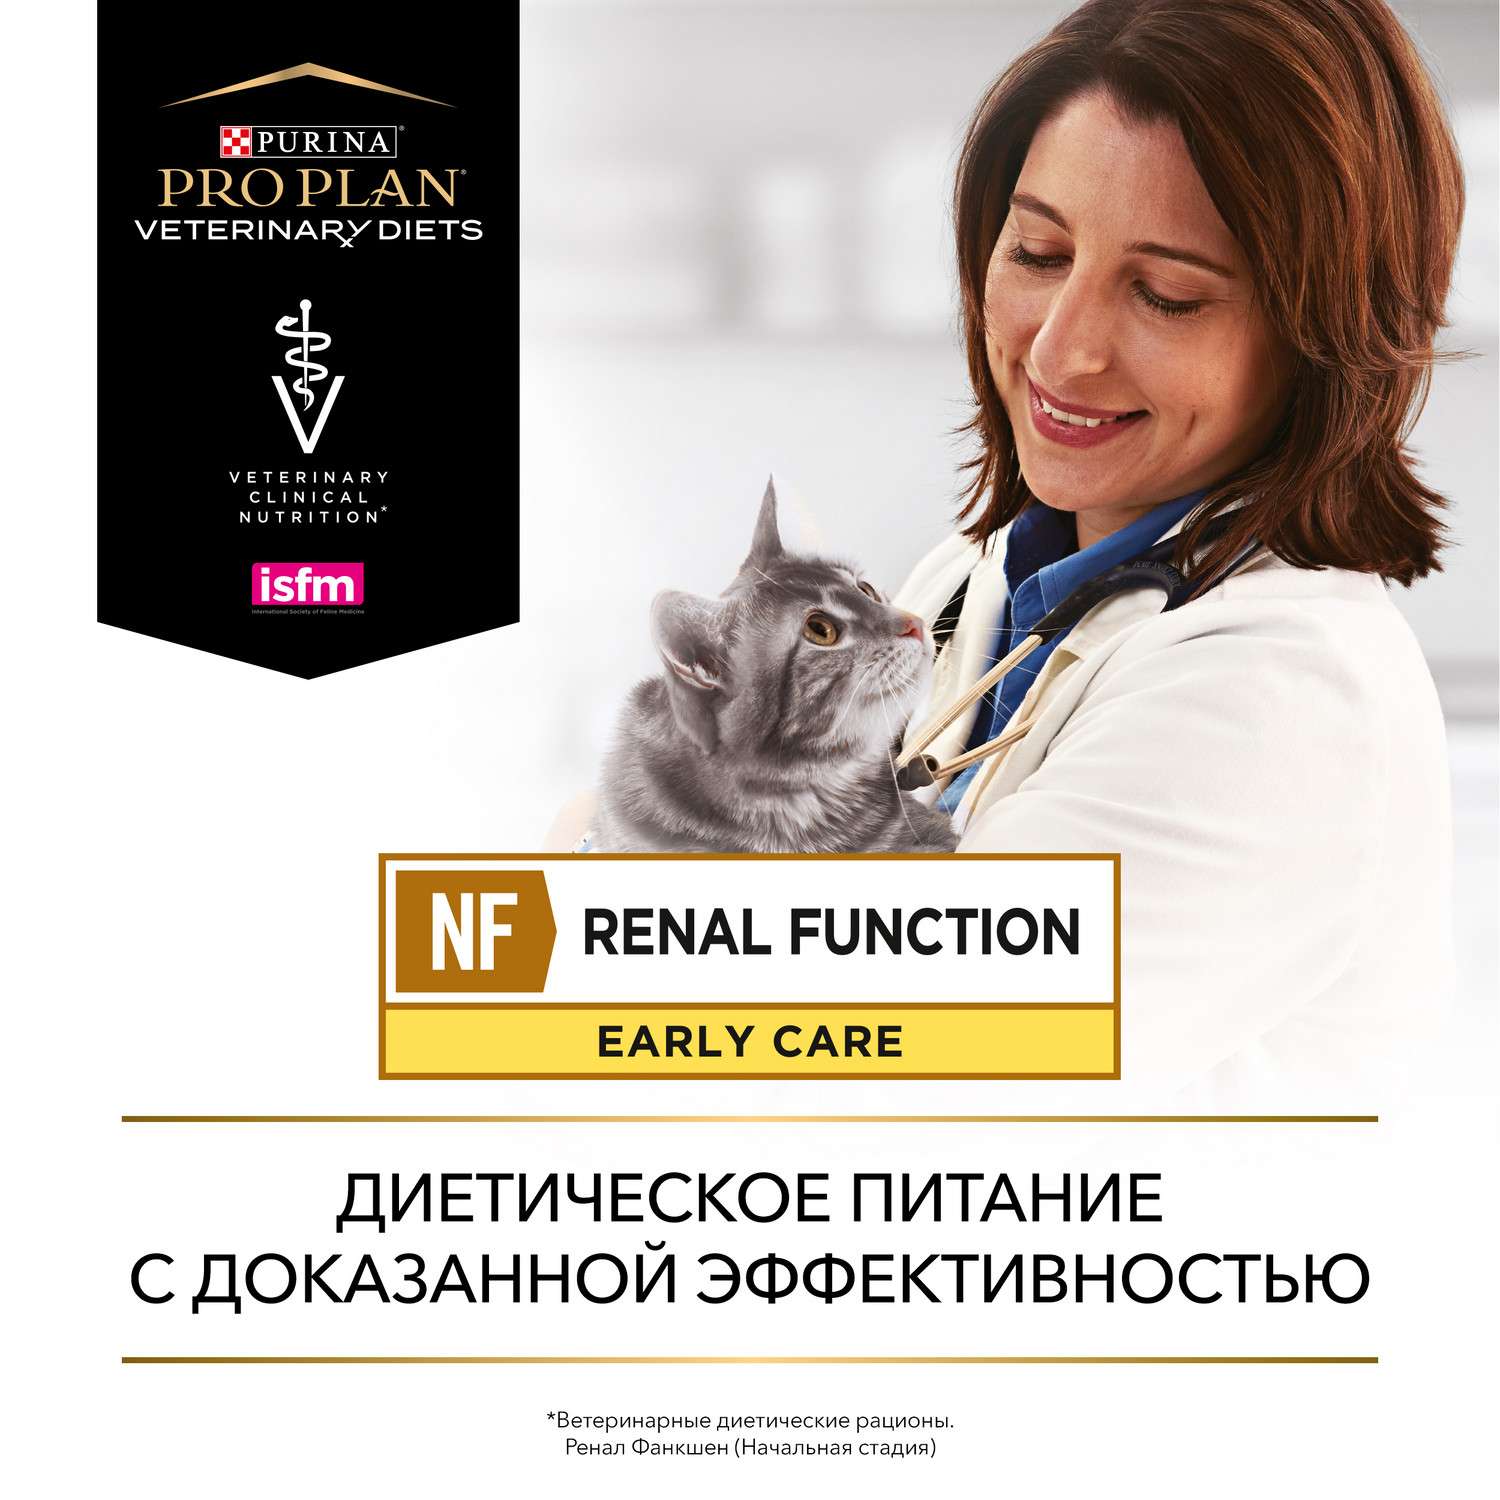 Корм для кошек Purina Pro Plan Veterinary diet 350г NF при патологии почек ранняя стадия - фото 13